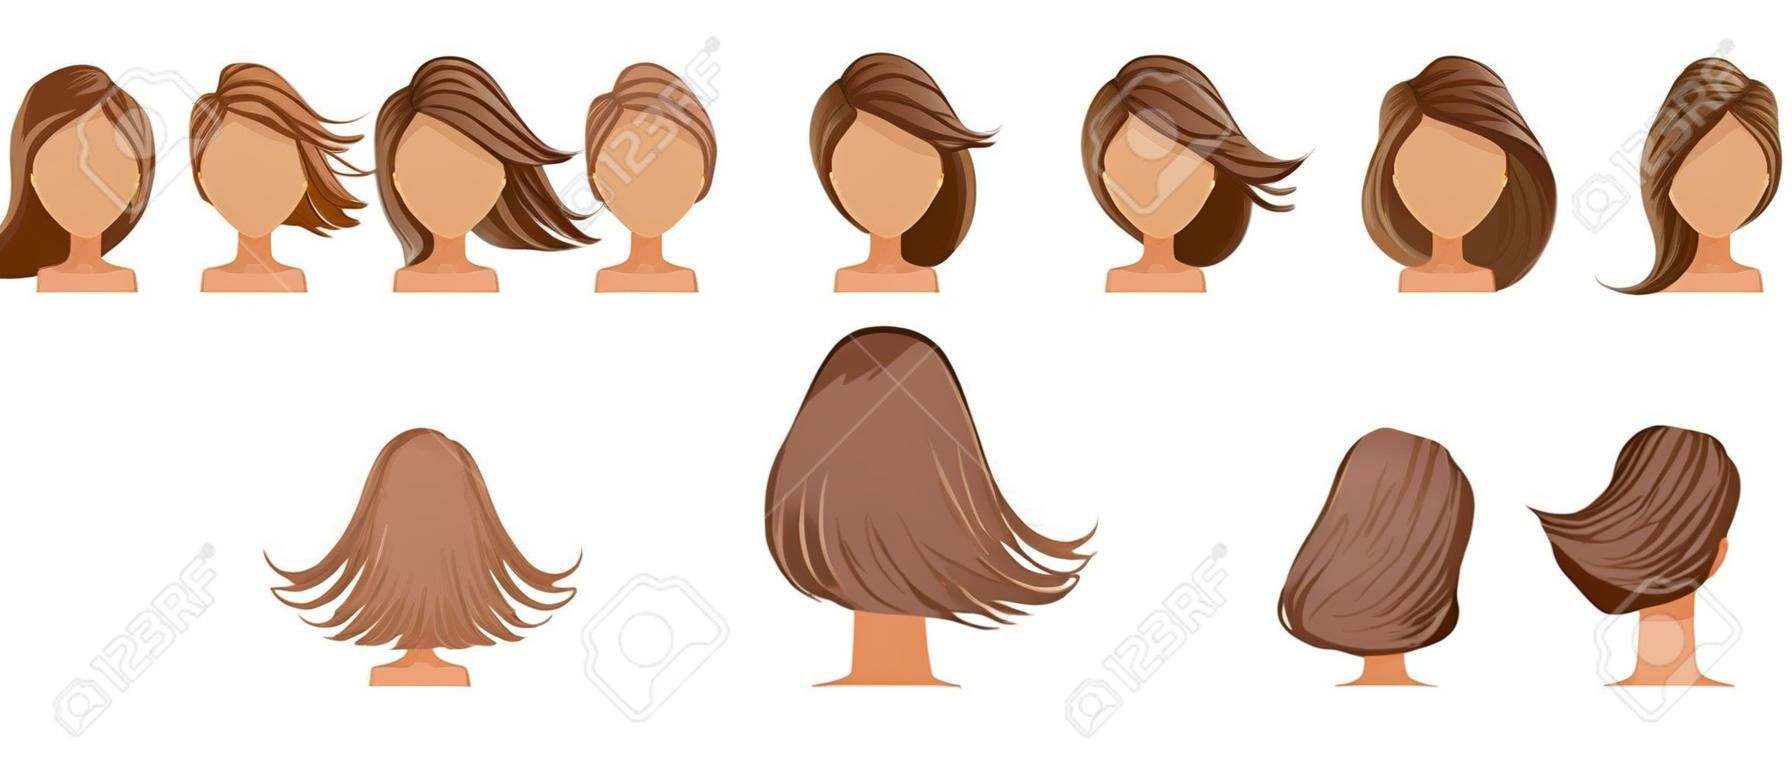 Haare geblasen Frauen eingestellt. Weitblick Die Haare sind wie weggeblasen. Vorne, hinten, links, rechts. Schöne Frisur braunes kurzes Haar der Frau. trendiger Haarschnitt. Vektor-Icon-Set isoliert auf weißem Hintergrund.